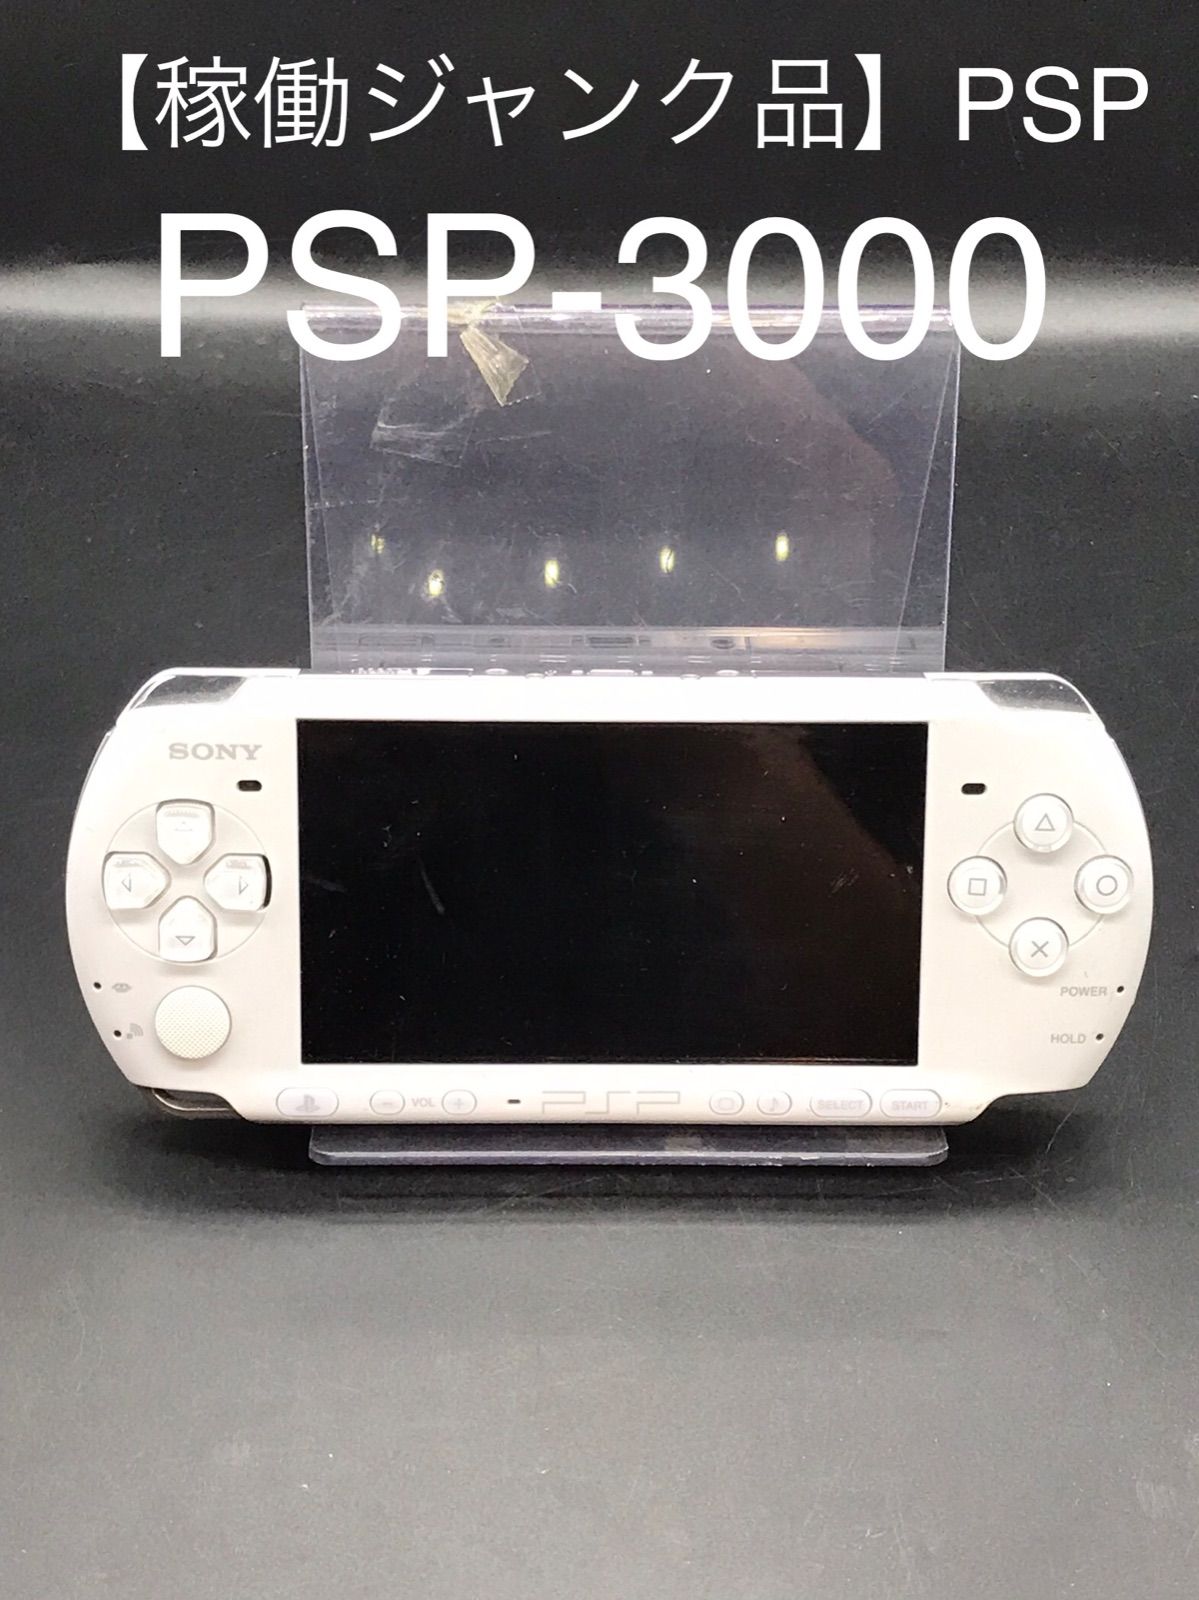 PSP SONY PSP-3000 ジャンク品 バッテリーなし パールホワイト - ゲーム